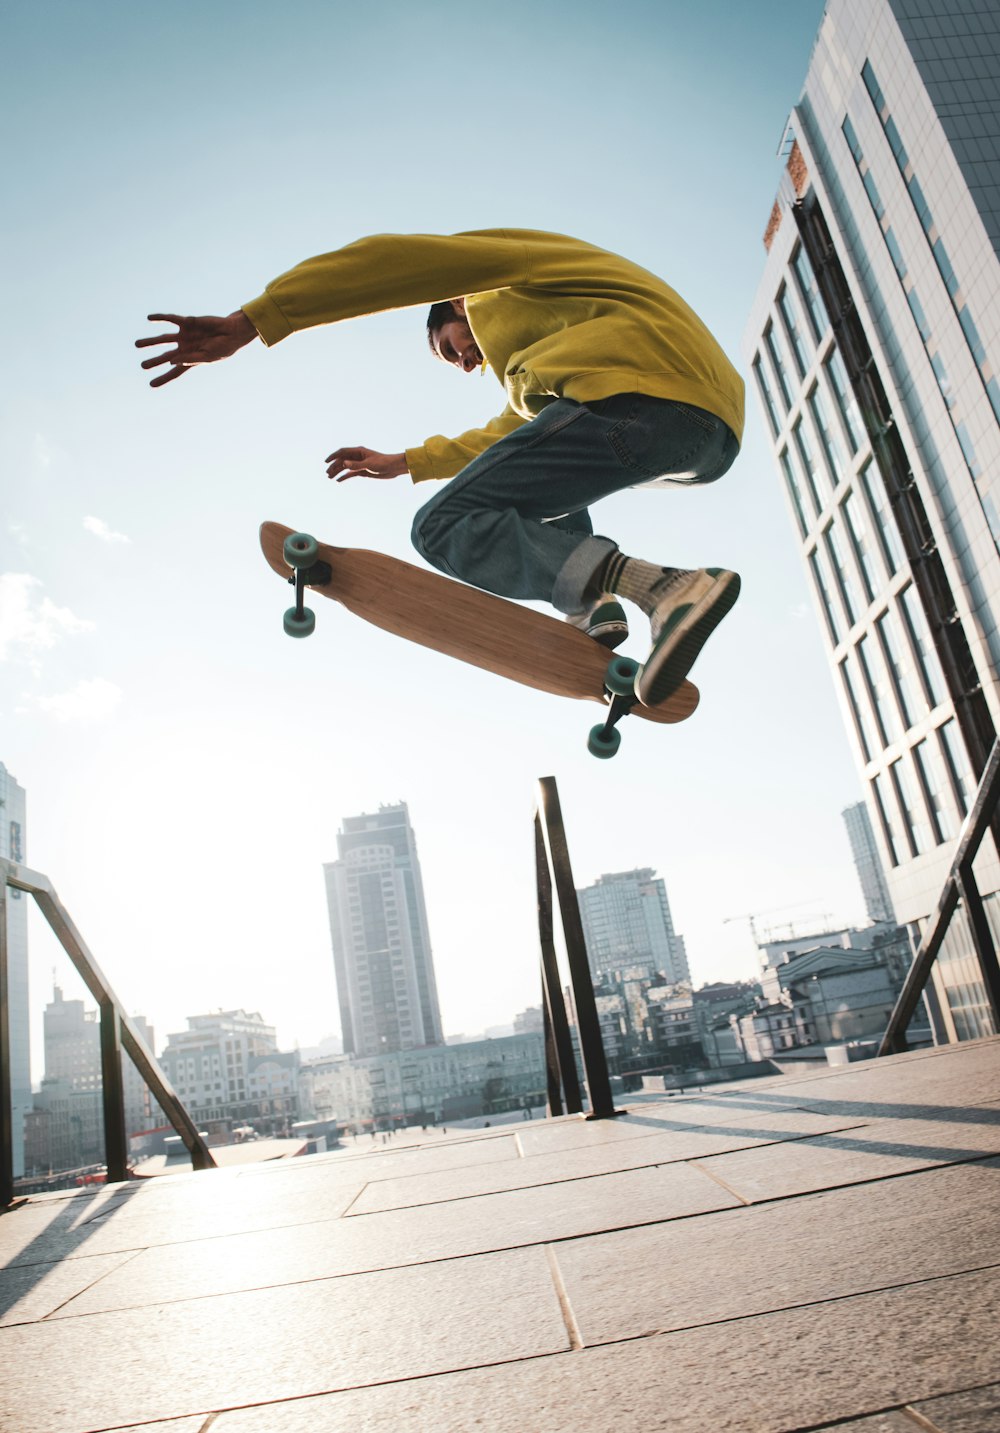 skateboarder doing stunts